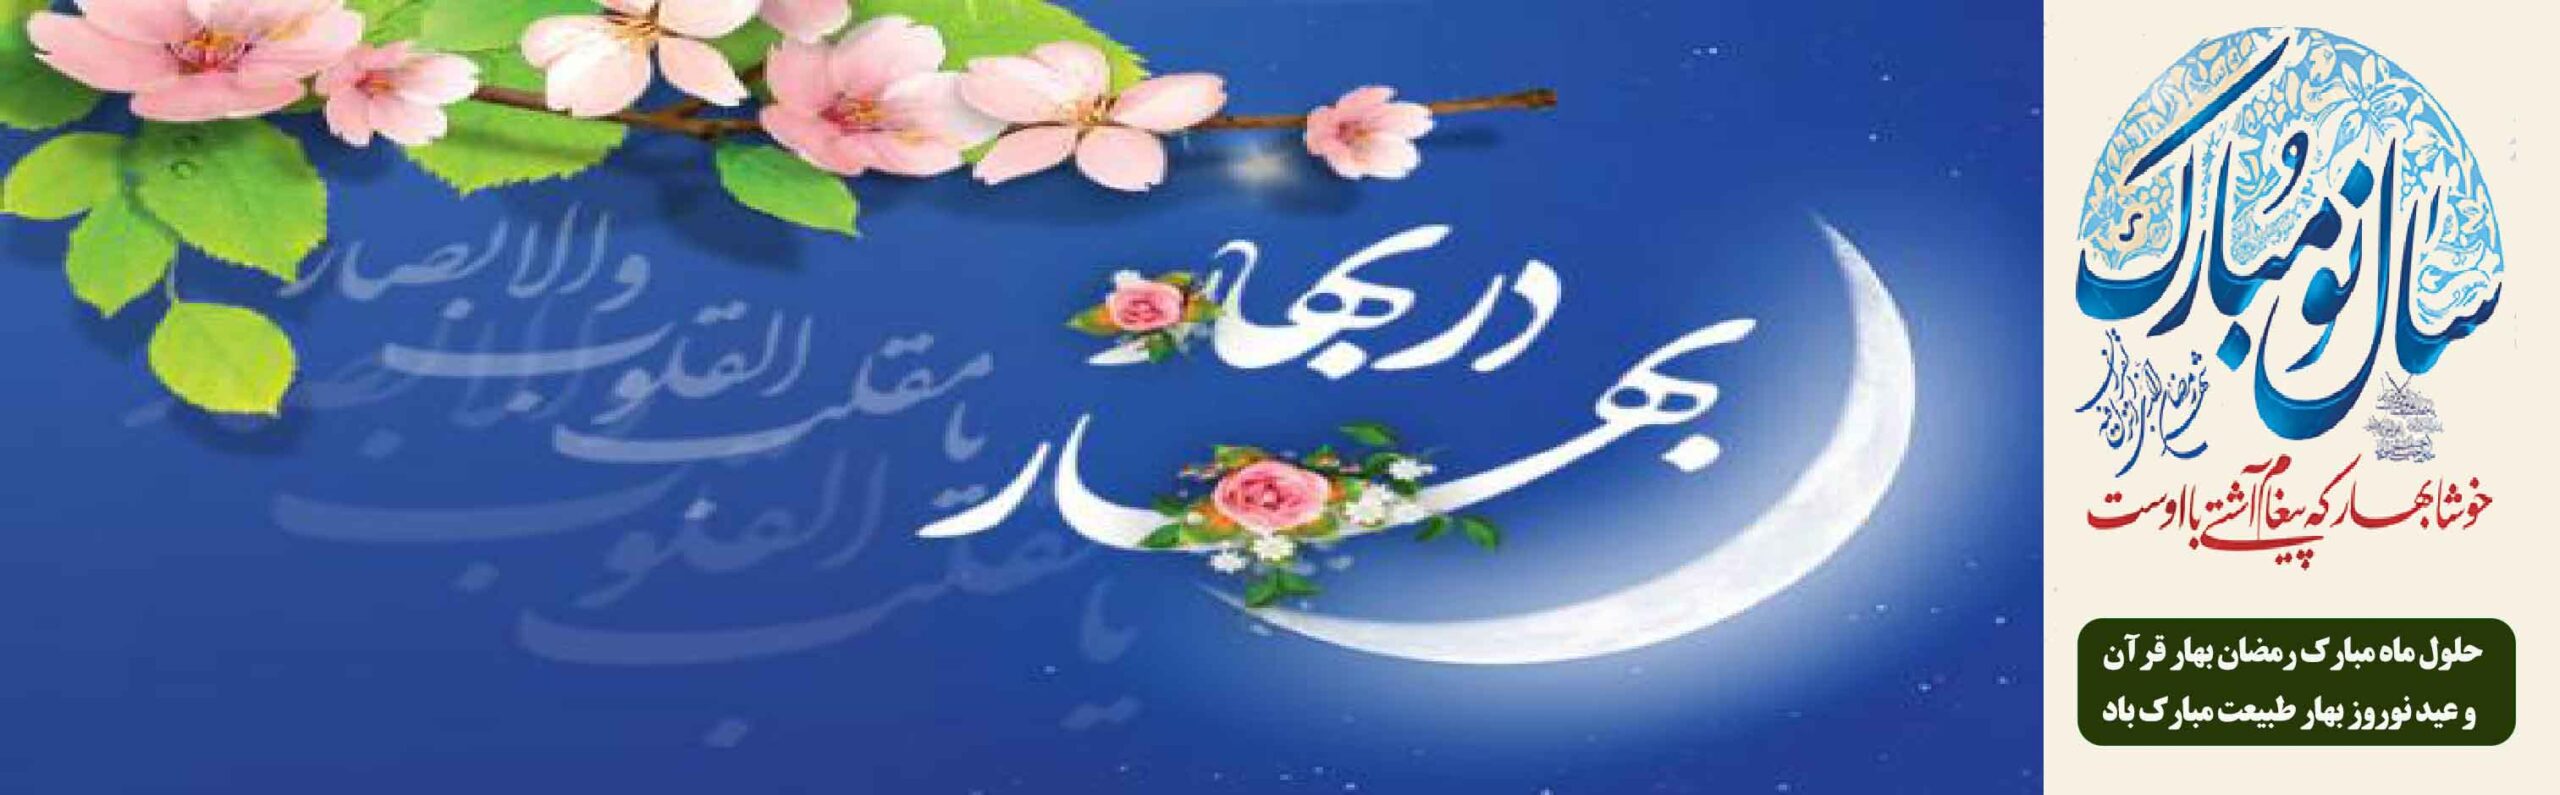 حلول ماه مبارک رمضان و بهار طبیعت مبارک باد